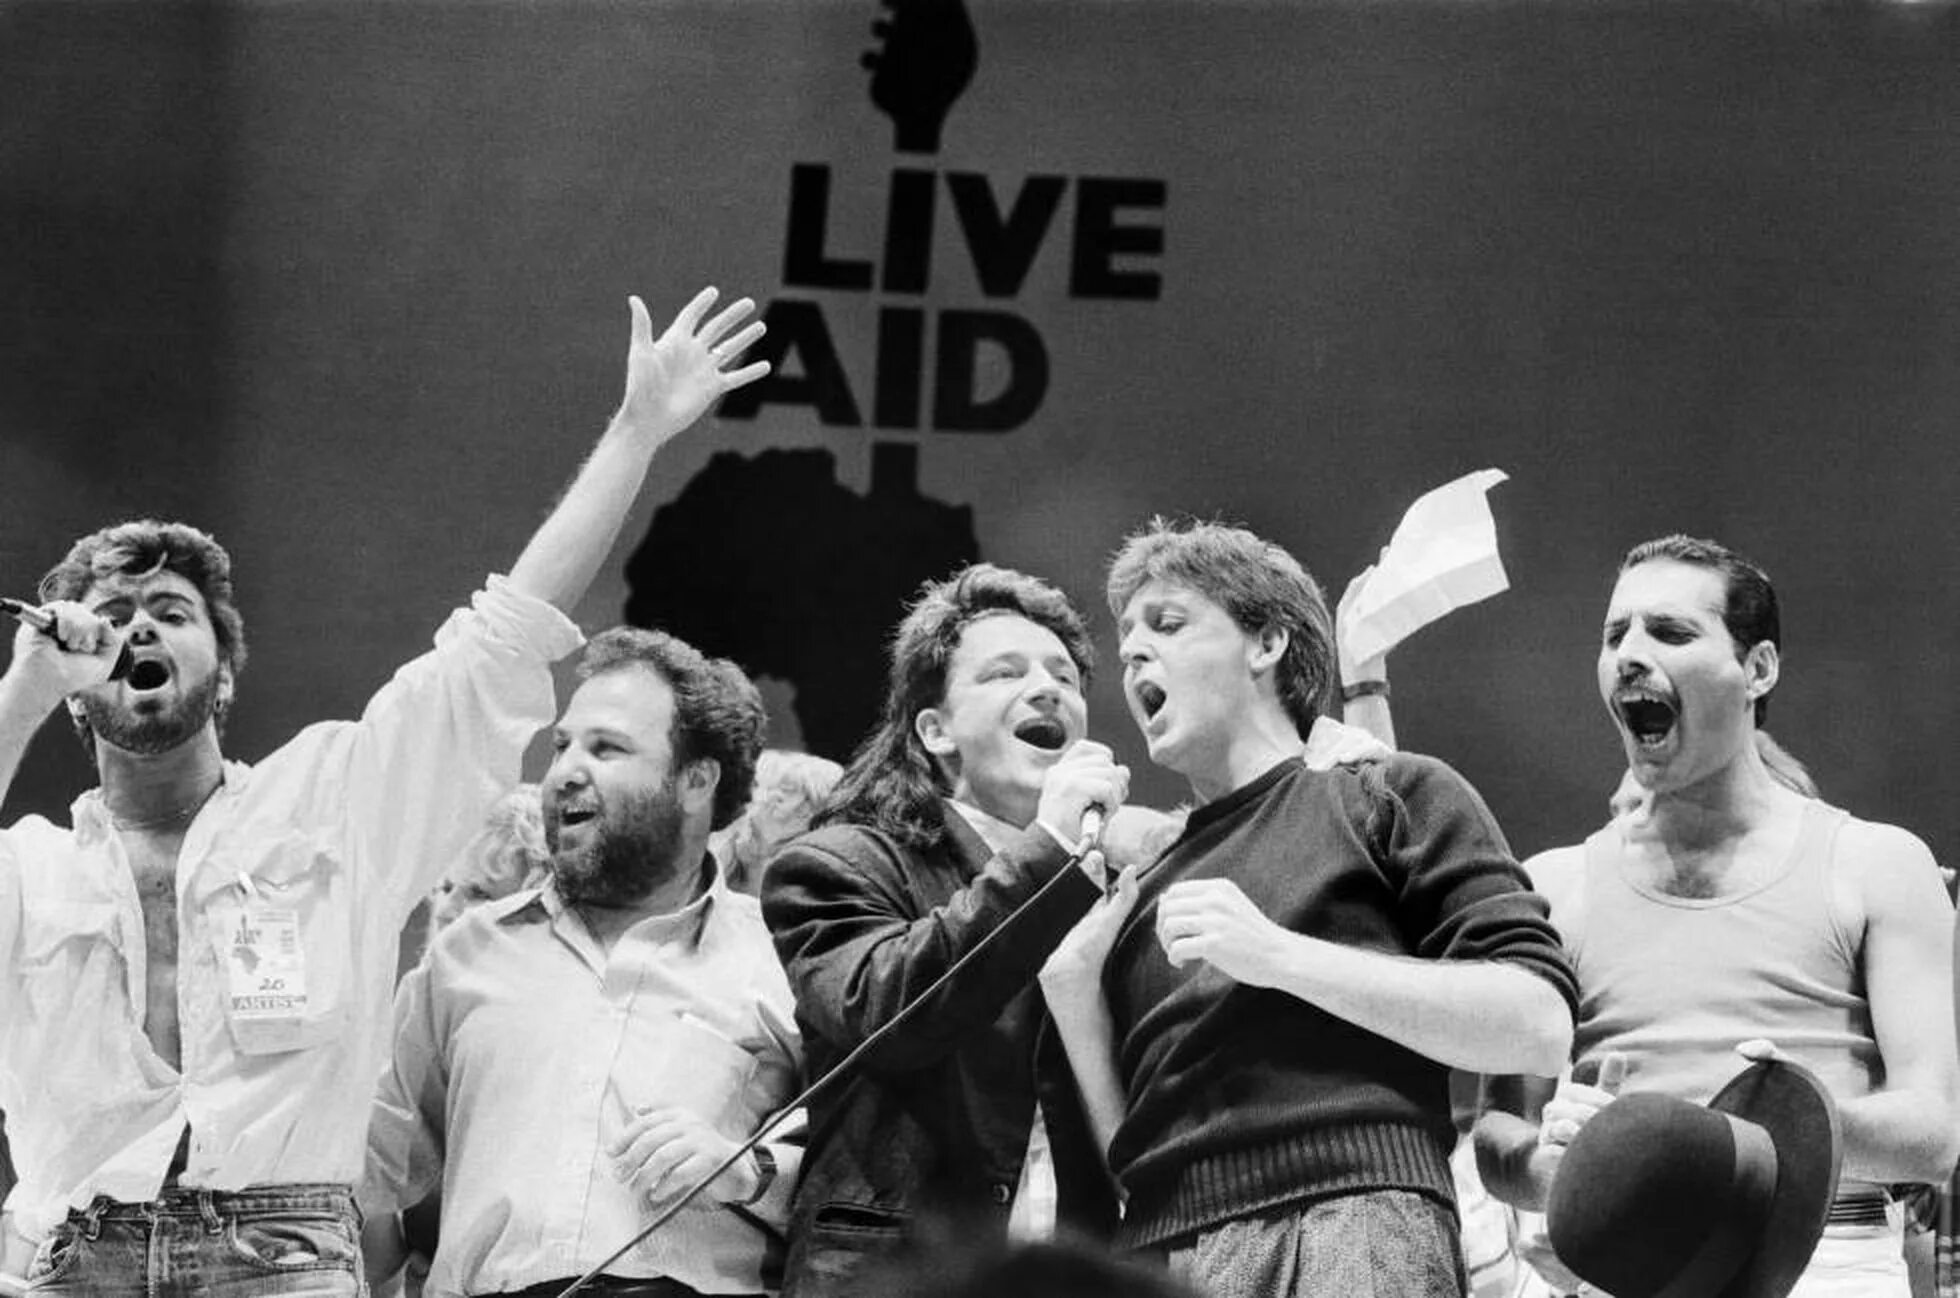 Концерт квин на стадионе. Квин Live Aid 1985. Концерт Live Aid 1985 Queen. Live Aid 1985 пол Маккартни. Фредди Меркьюри Live Aid 1985.